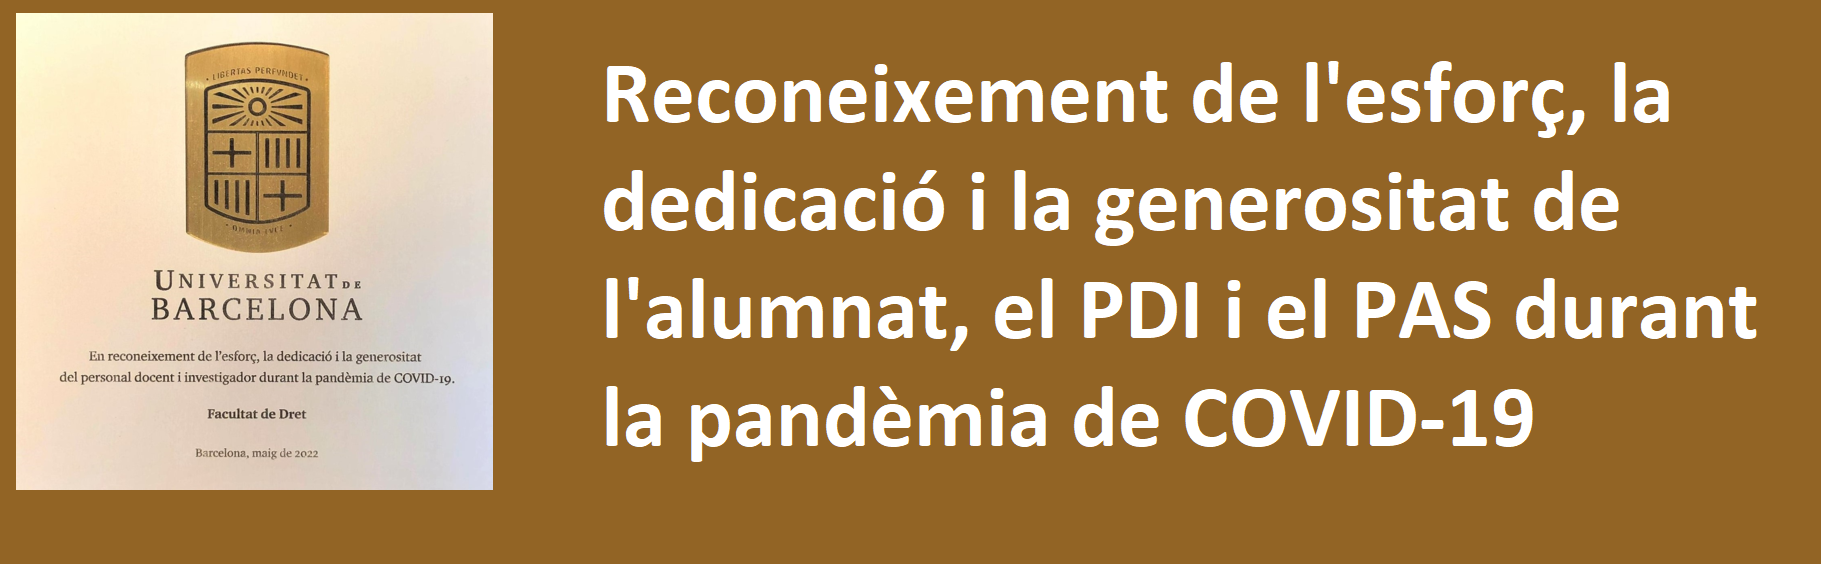 Reconeixement de l'esforç, la dedicació i la generositat de l'alumnat, el PDI i el PAS durant la pandèmia de COVID-19